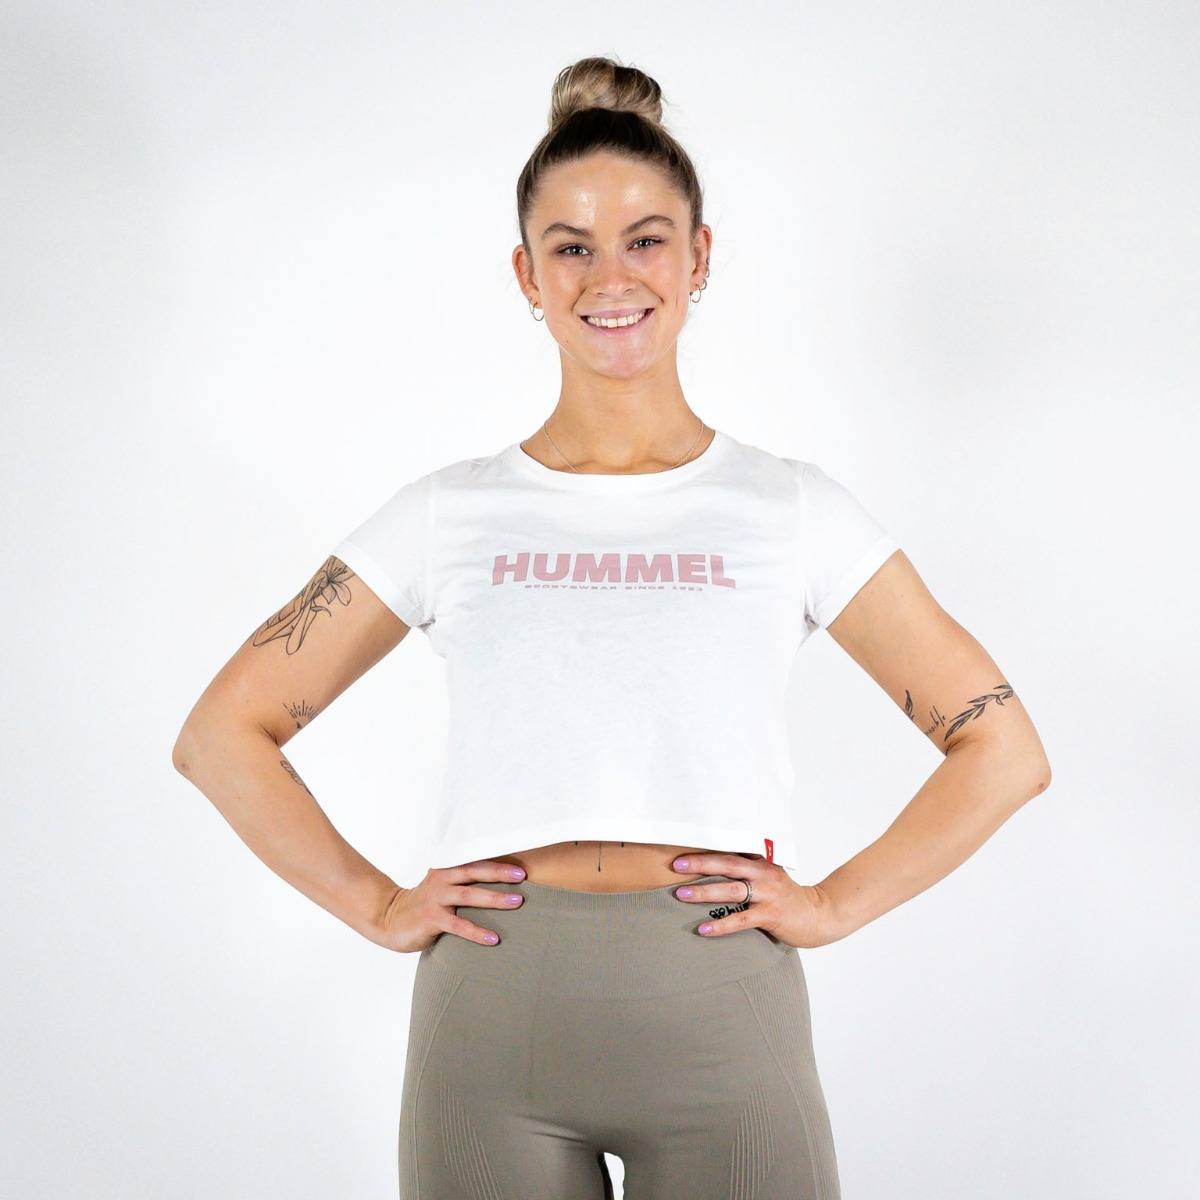 Brug Hummel LEGACY Cropped T-shirt  -  White til en forbedret oplevelse